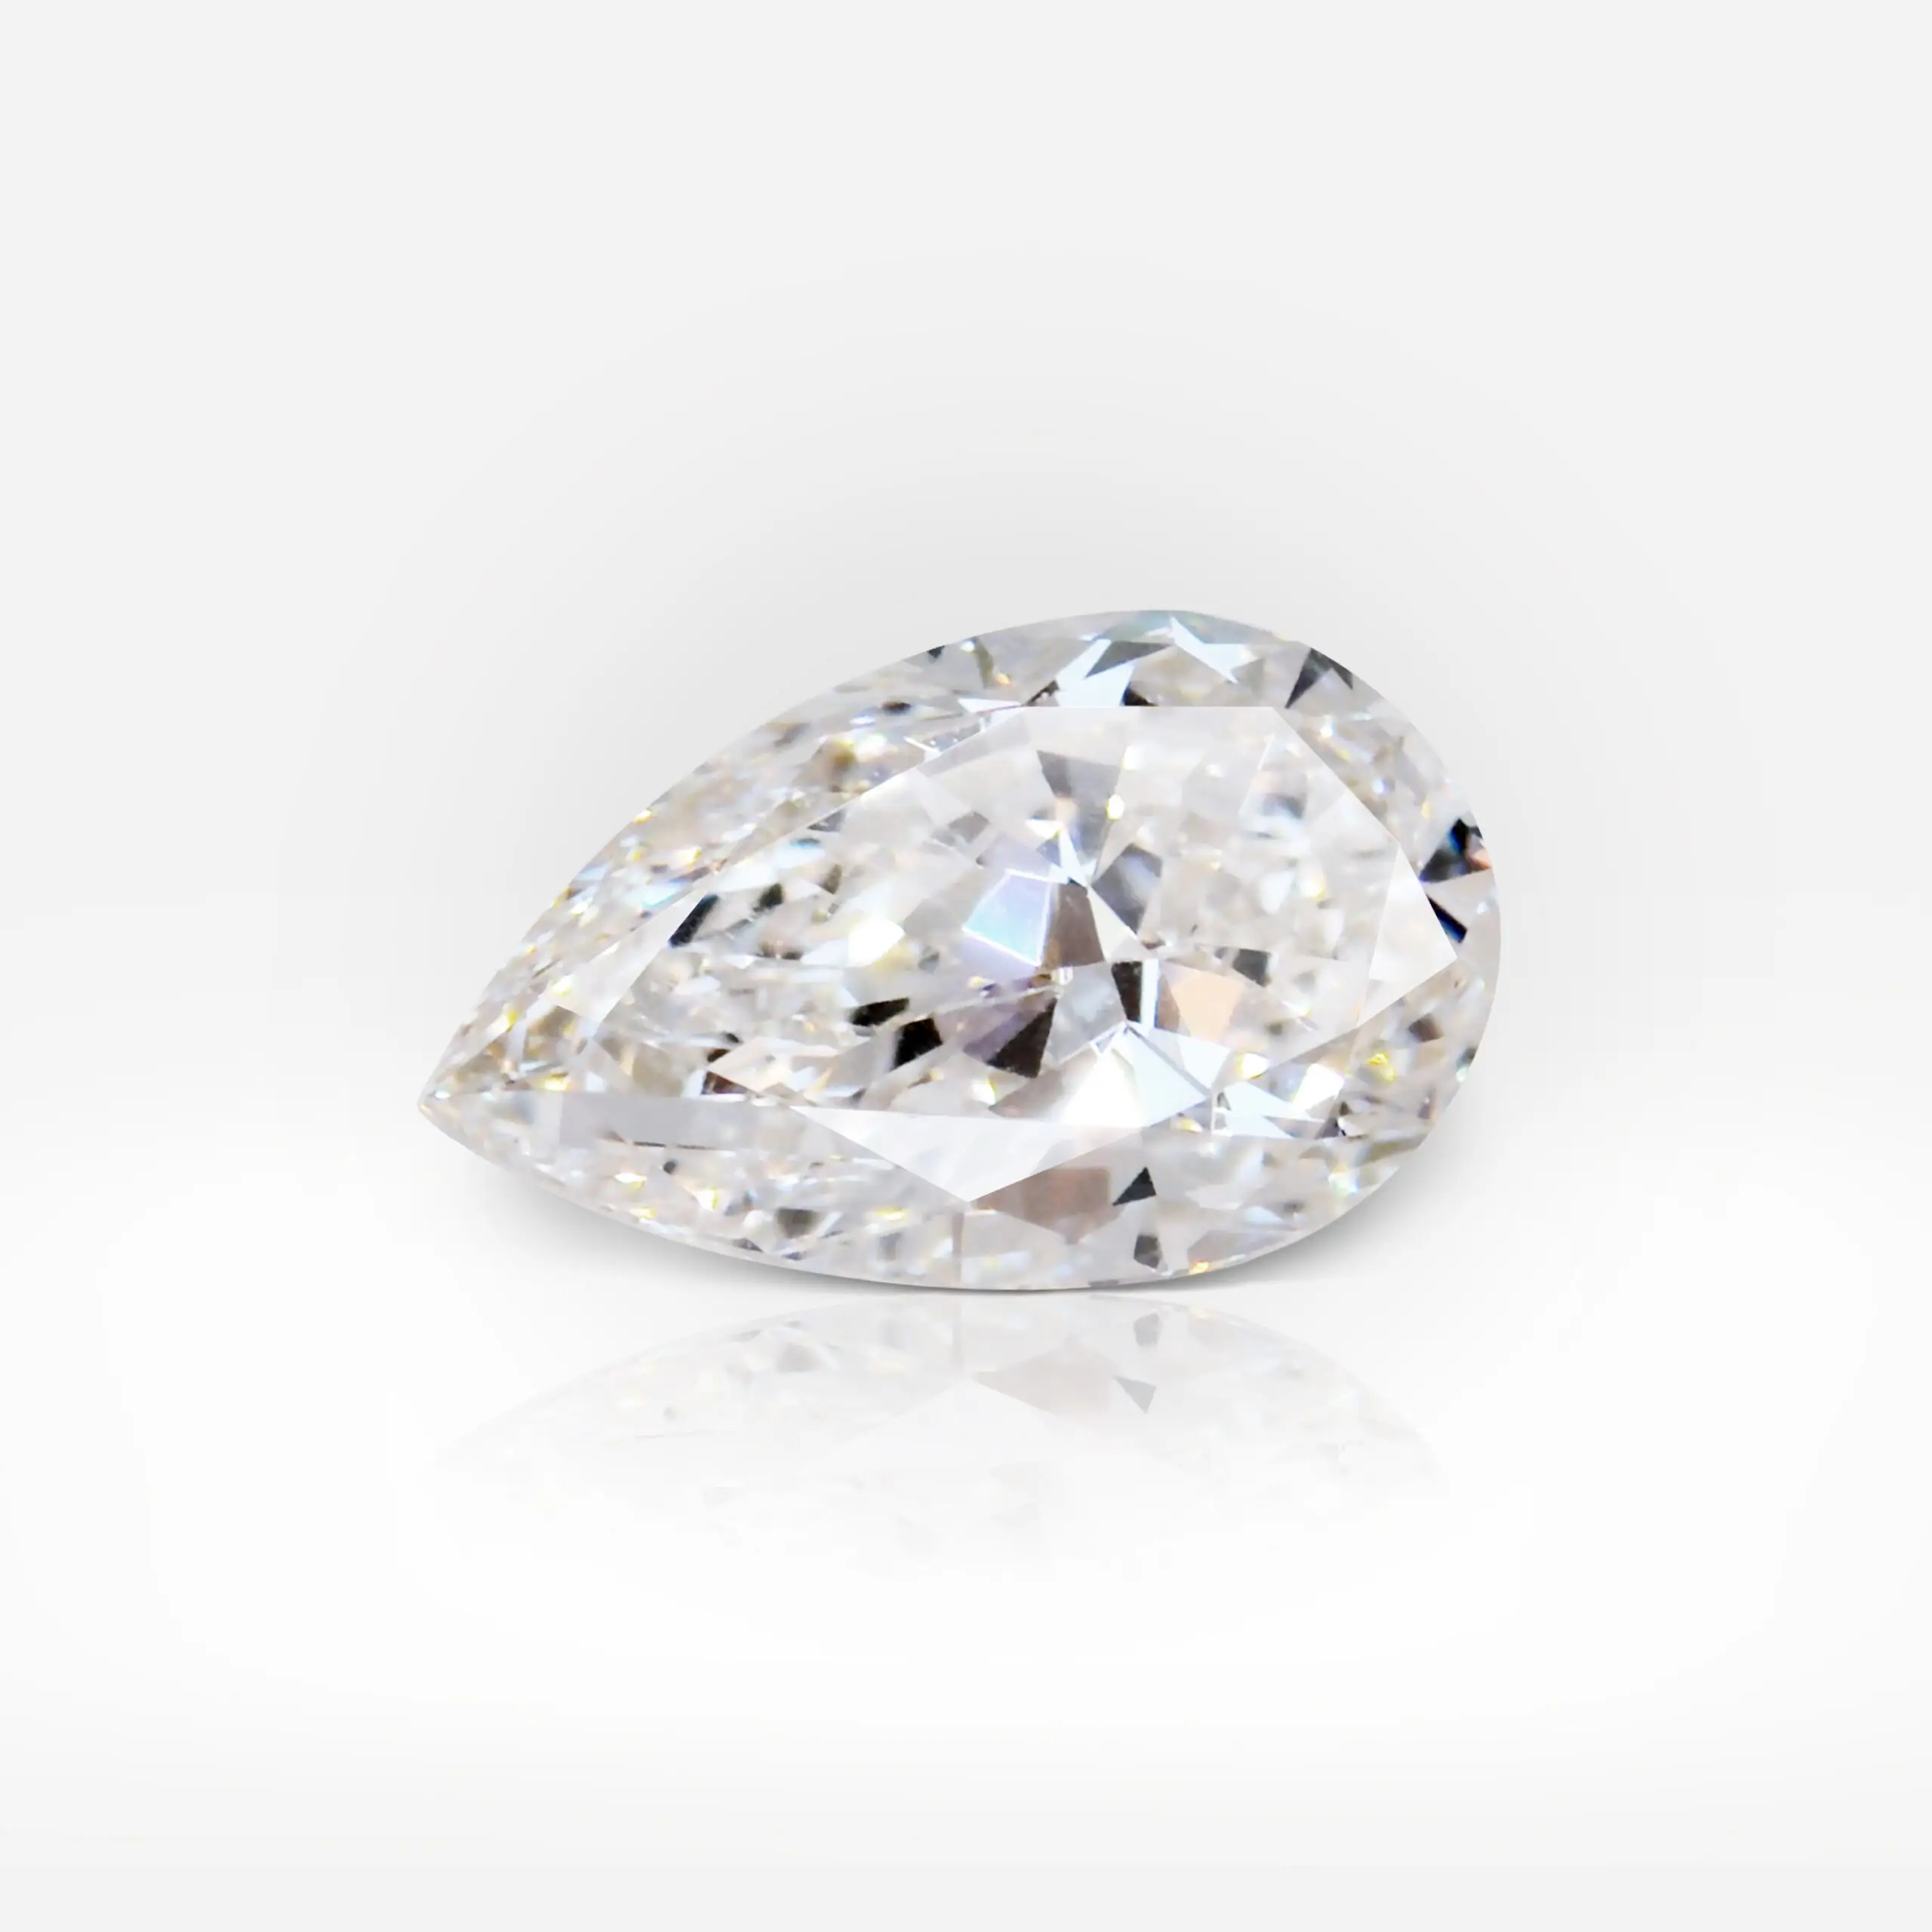 0.94 carat I VVS2 Pear Shape Diamond HRD - picture 1